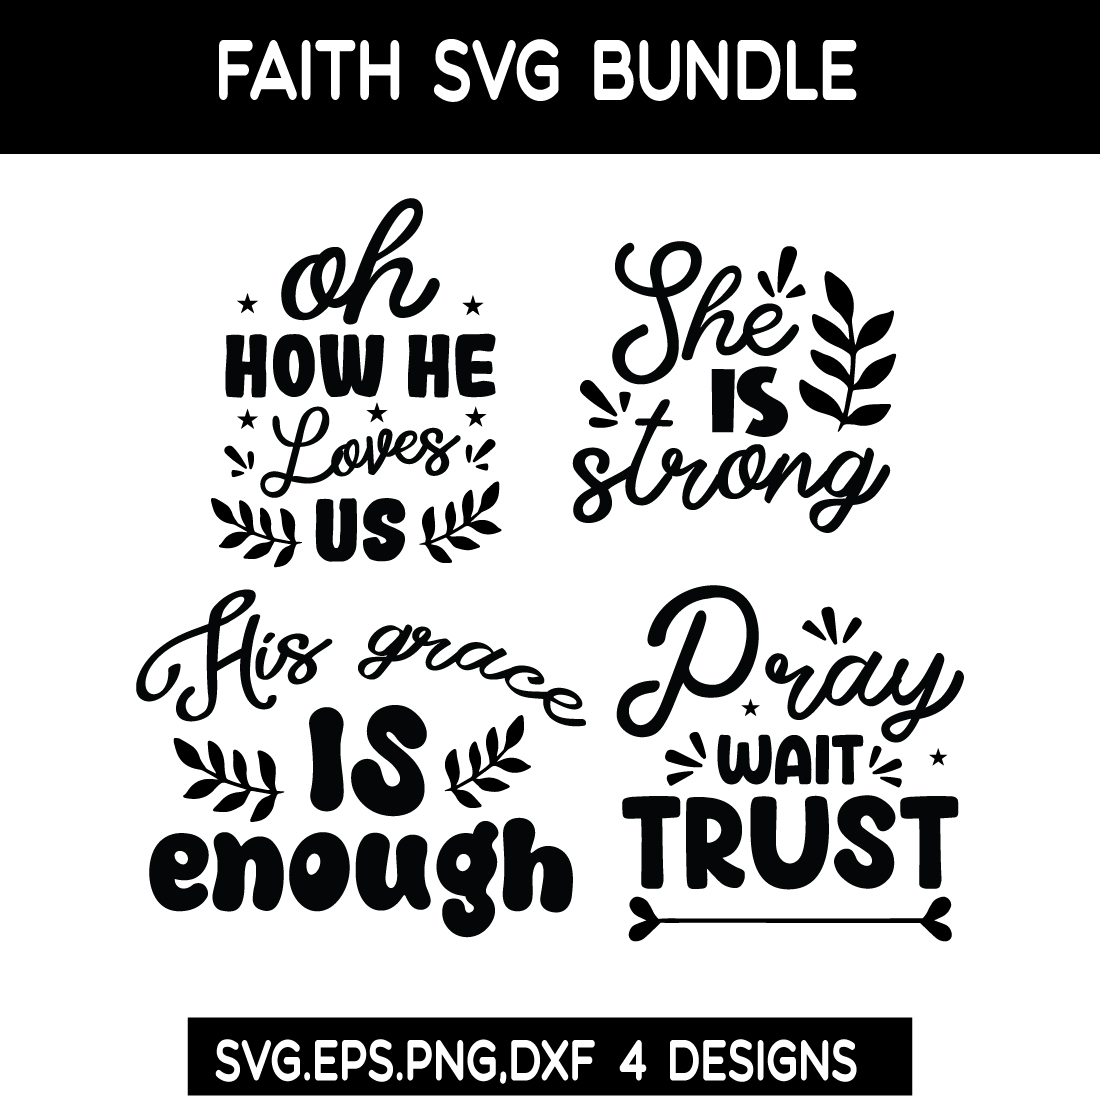 Faith SVG Bundle cover image.